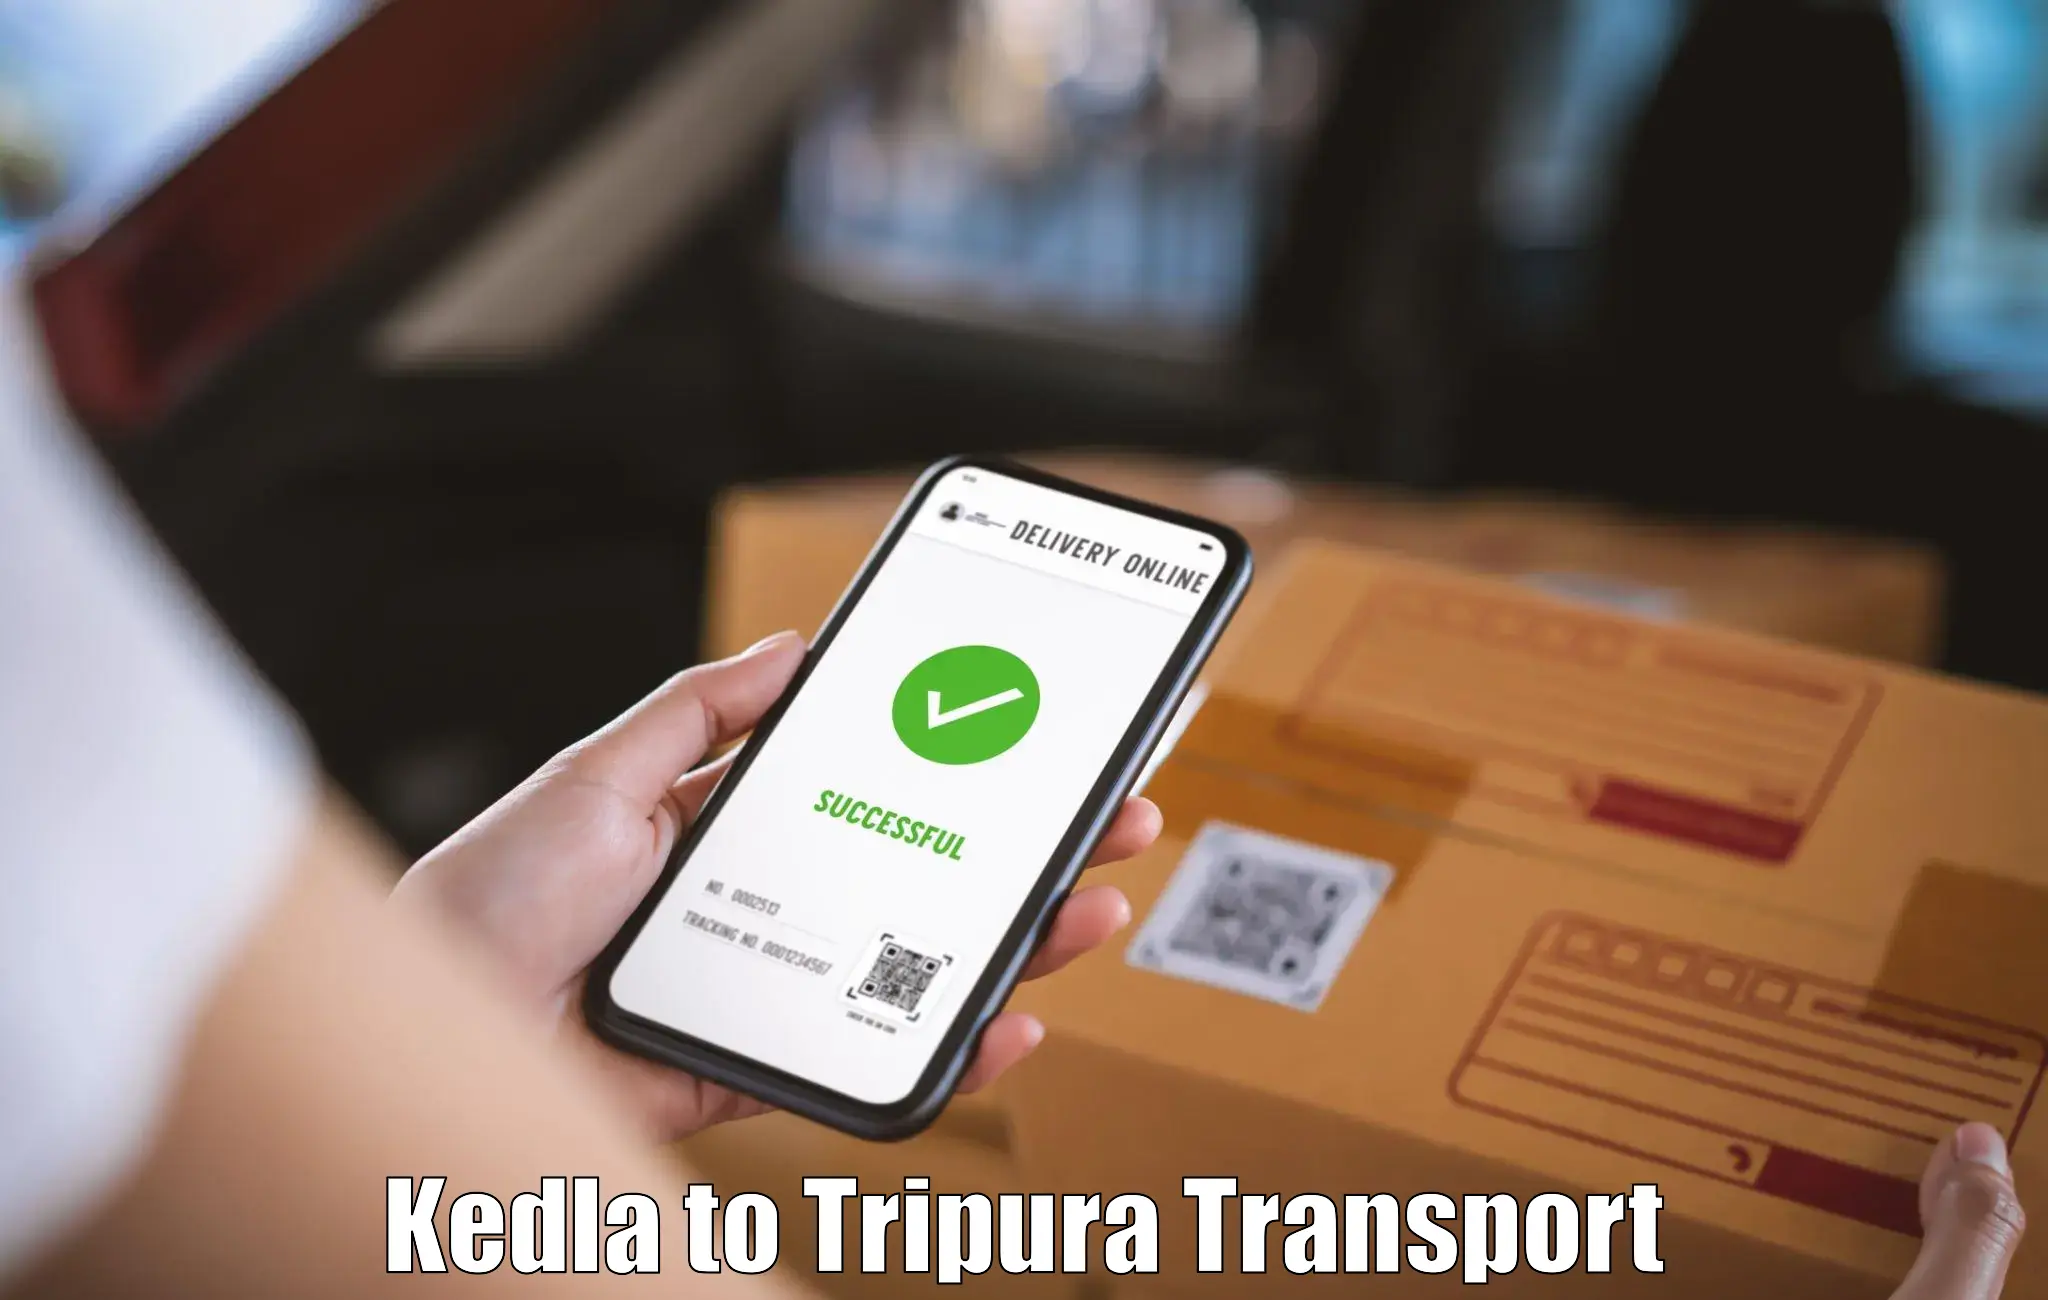 Road transport online services Kedla to Tripura